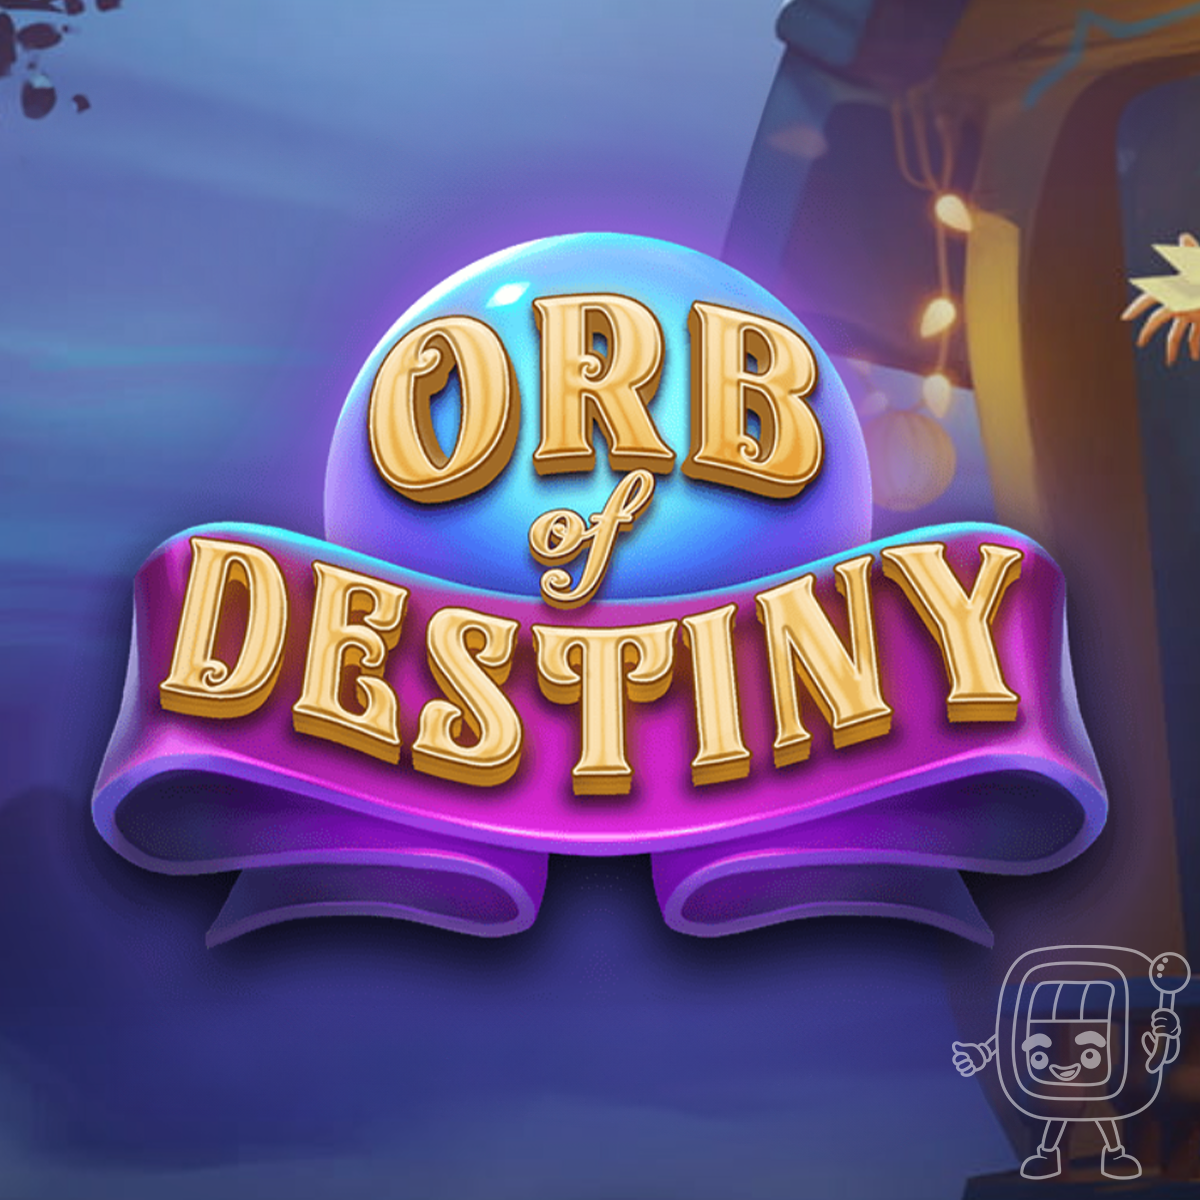 orb of destiny slot review